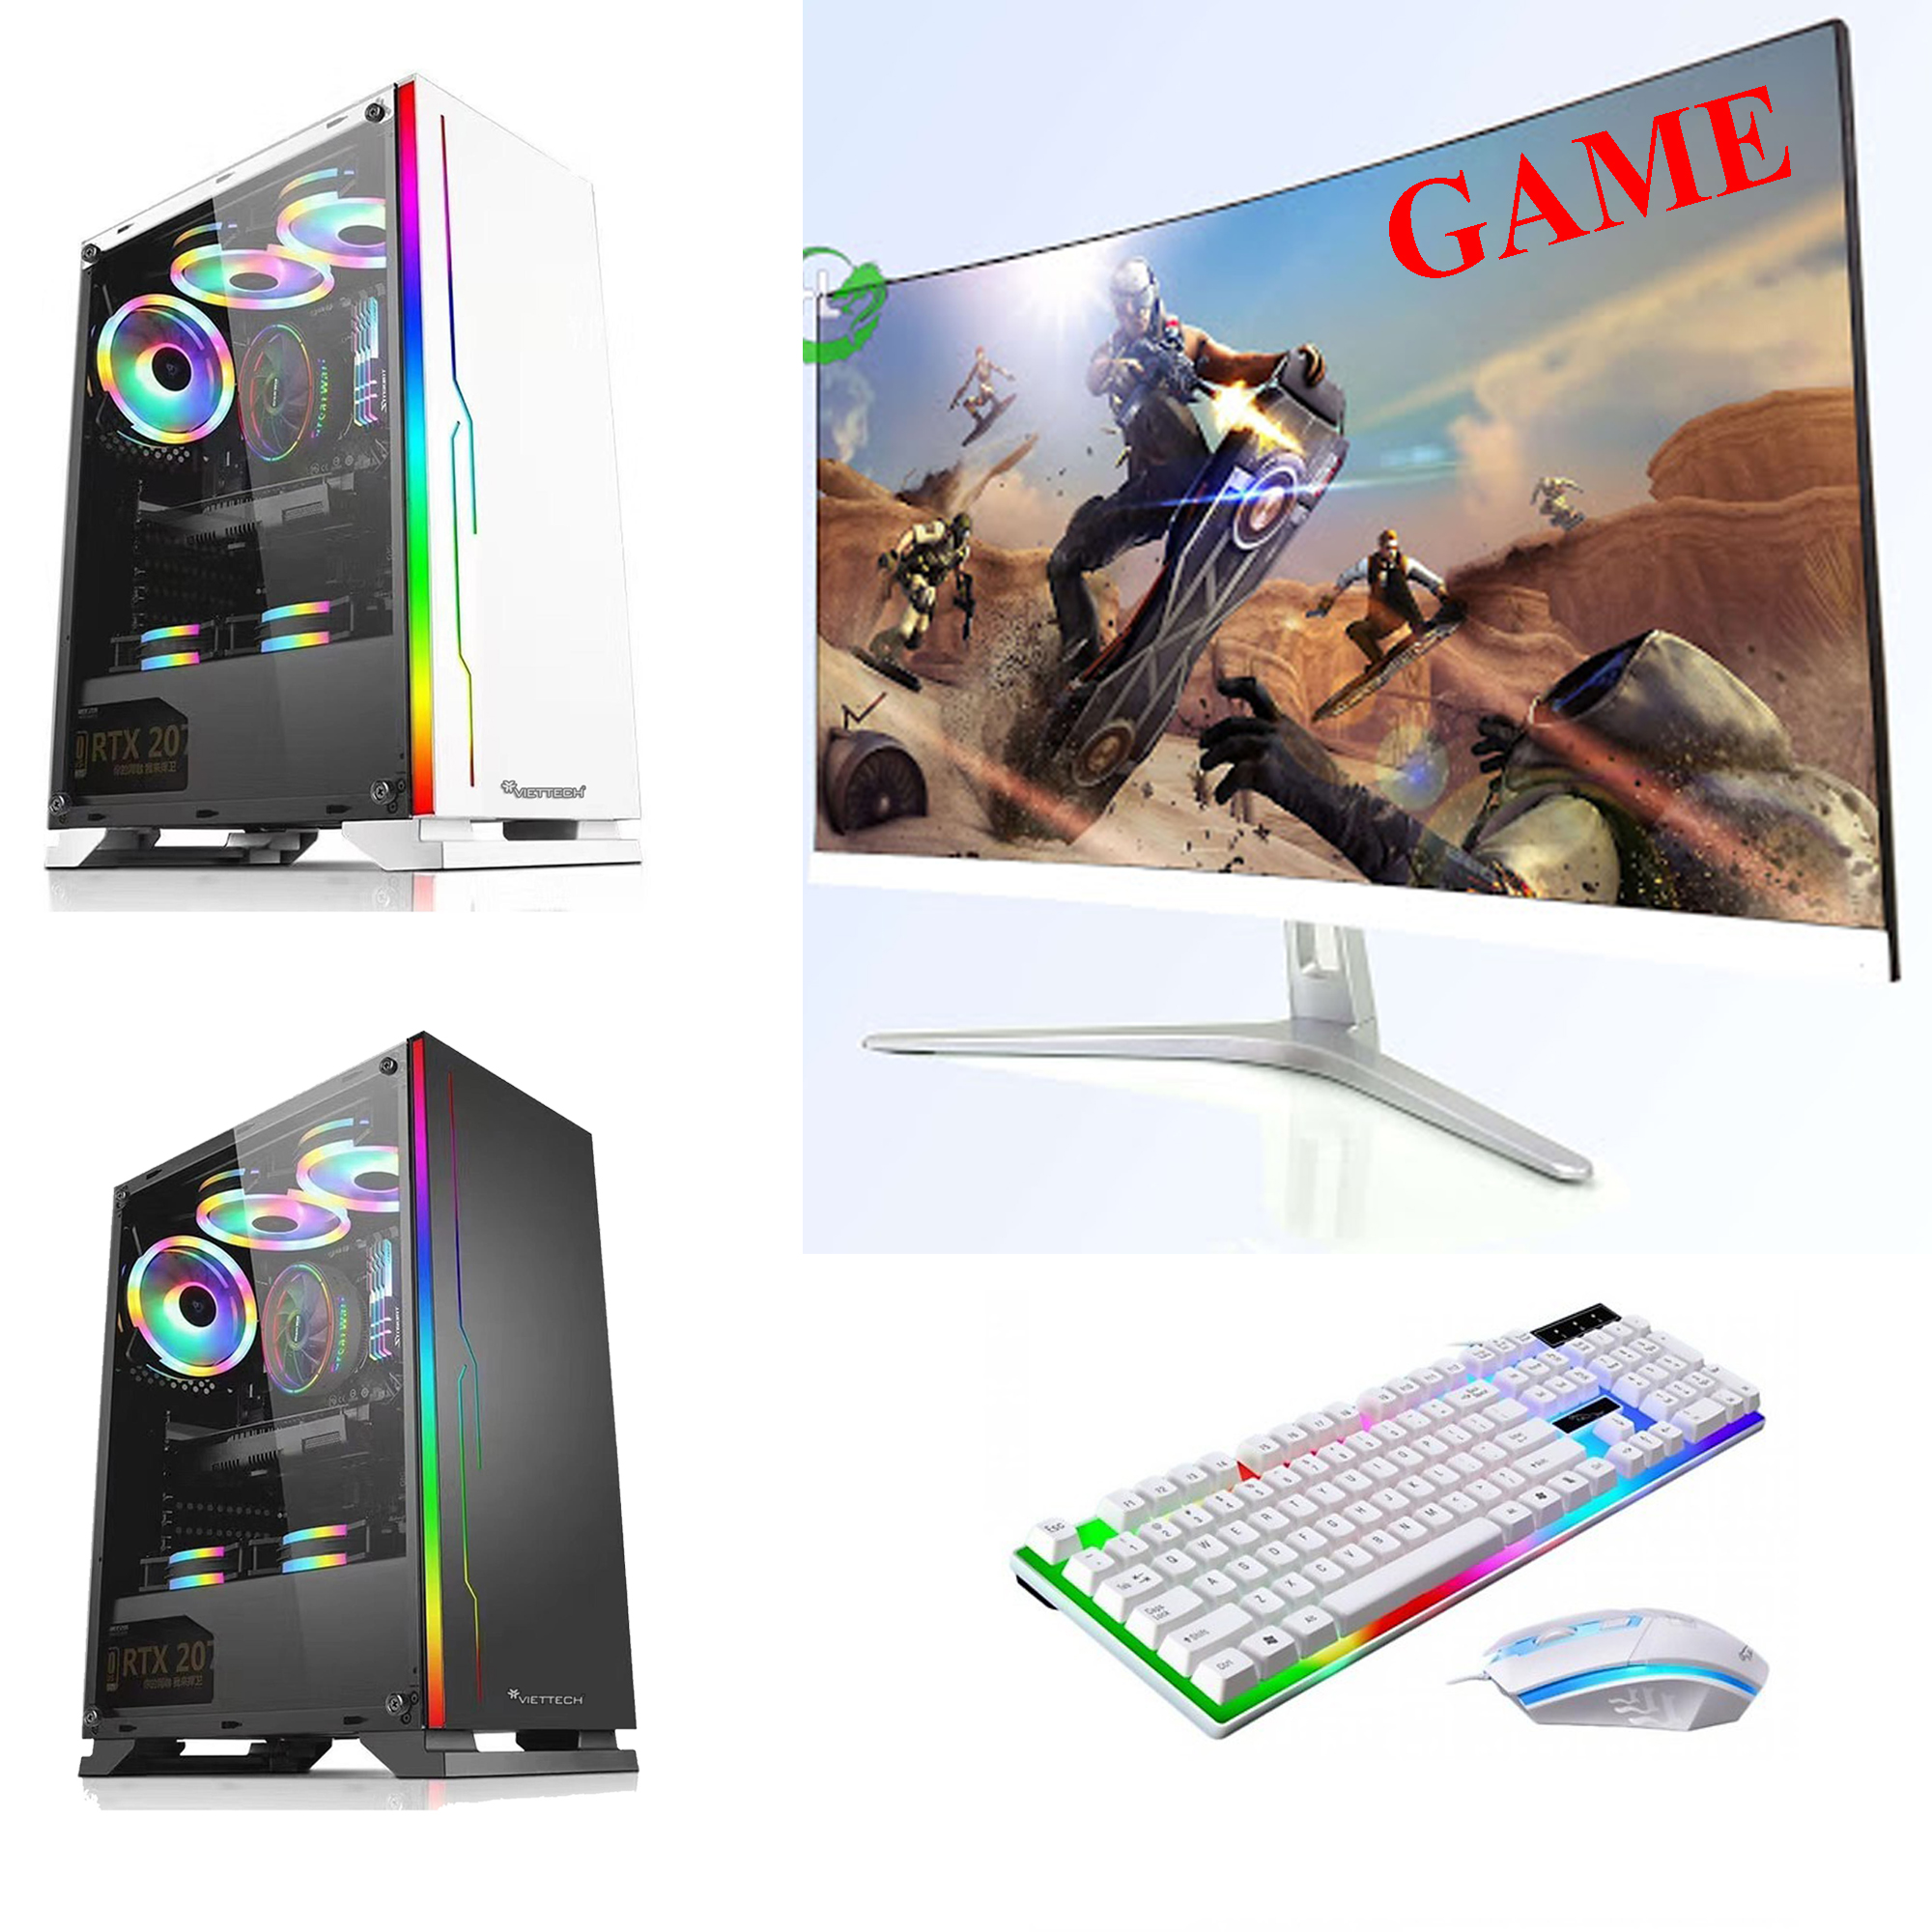 Bộ máy tính để bàn chơi GAME VietTech (Sản phẩm trọn bộ )- Hàng nhập khẩu